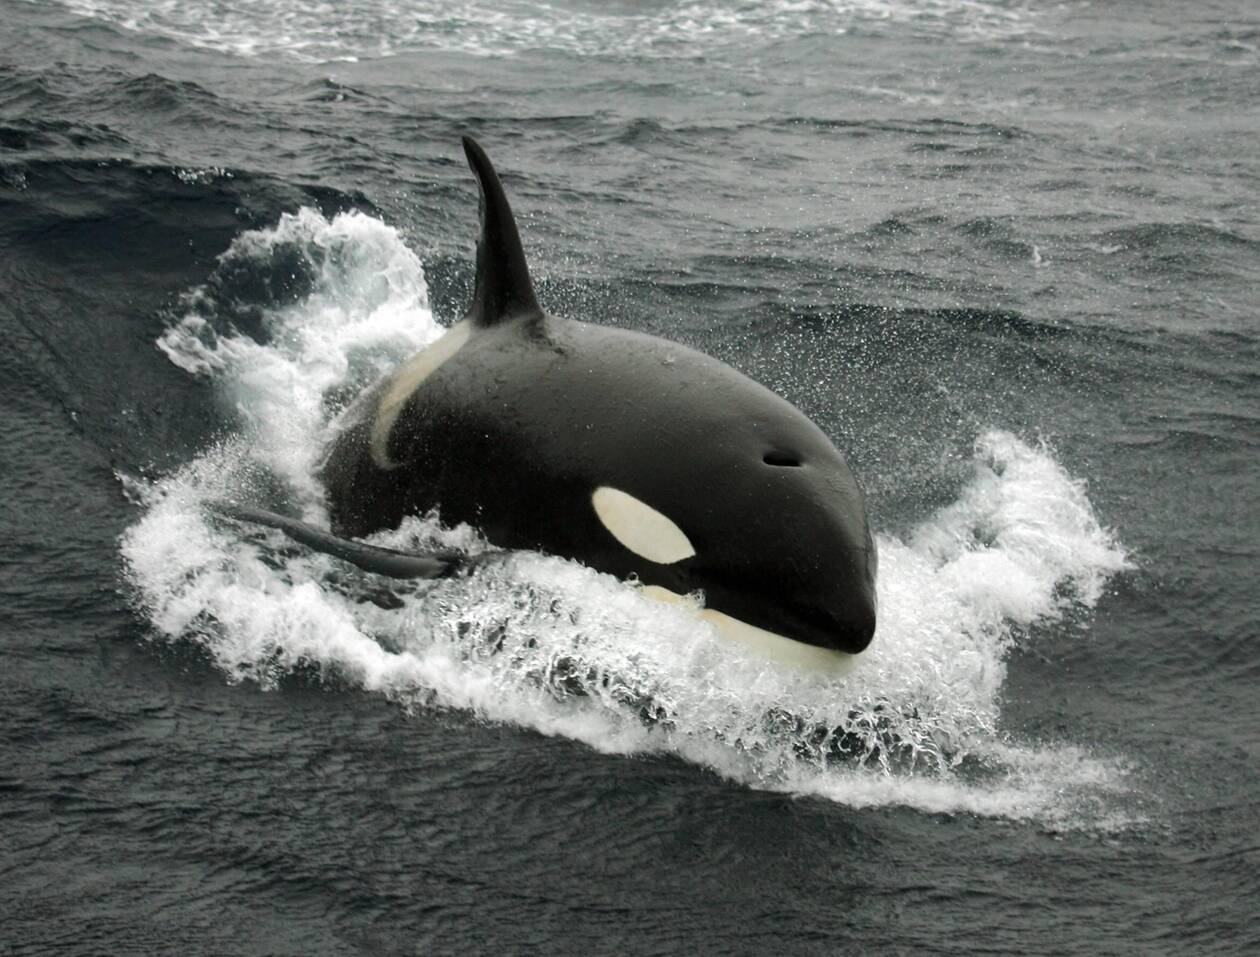 L’orque affaiblie dans la Seine va être guidée vers la mer par un drone, annonce la préfecture - Ouest-France éditions locales